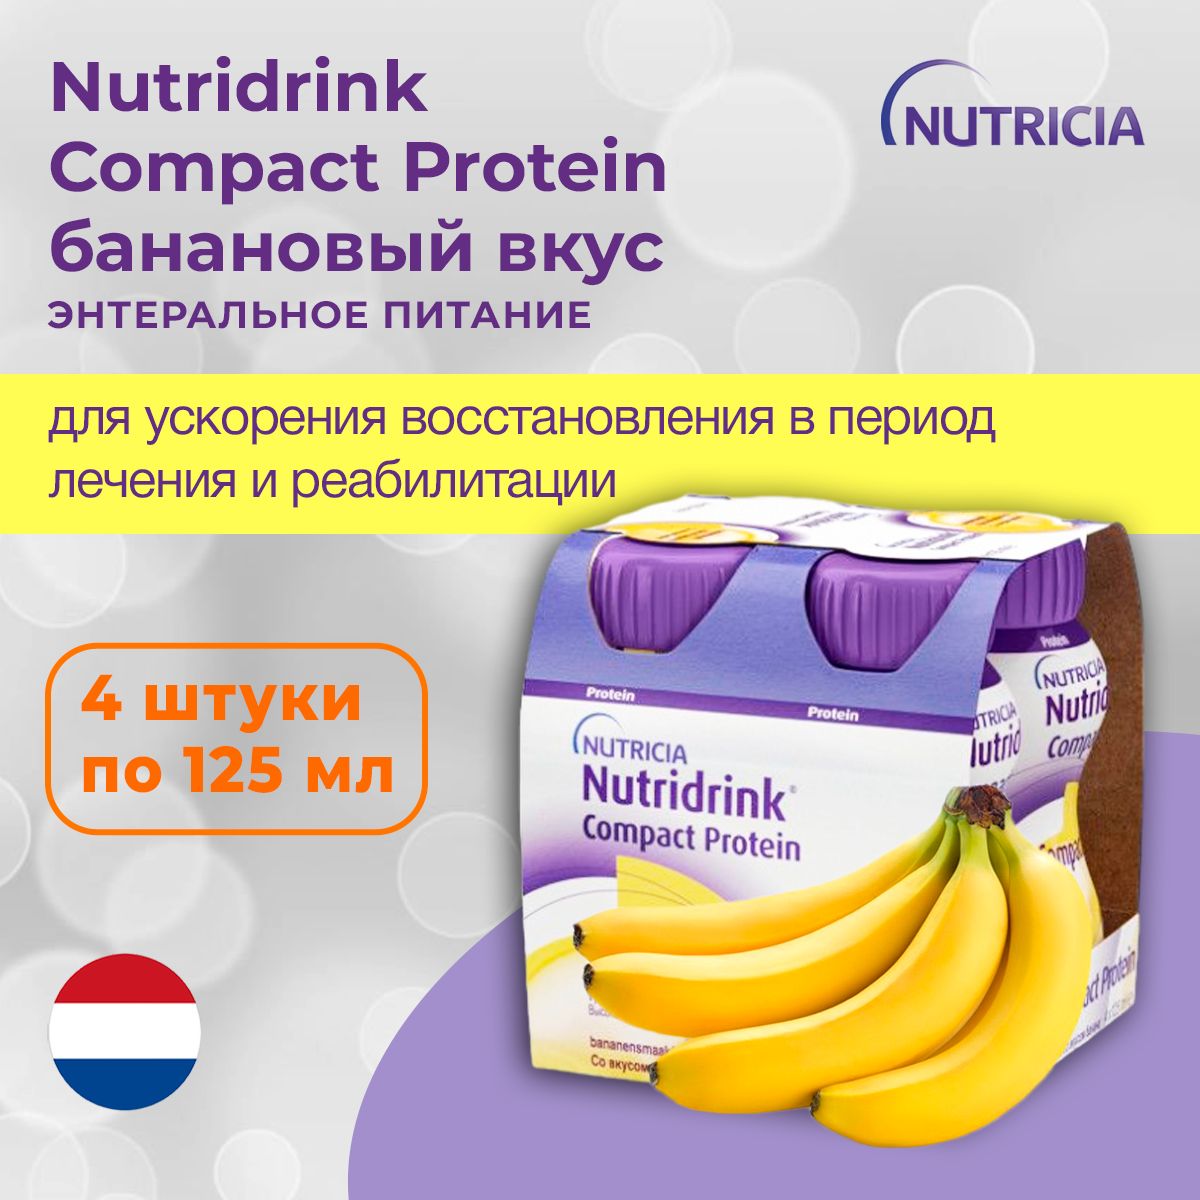 Nutridrink compact protein отзывы. Нутридринк компакт протеин. Энтеральное питание Нутридринк компакт. Протеин со вкусом банана. Nutridrink Compact Protein состав.